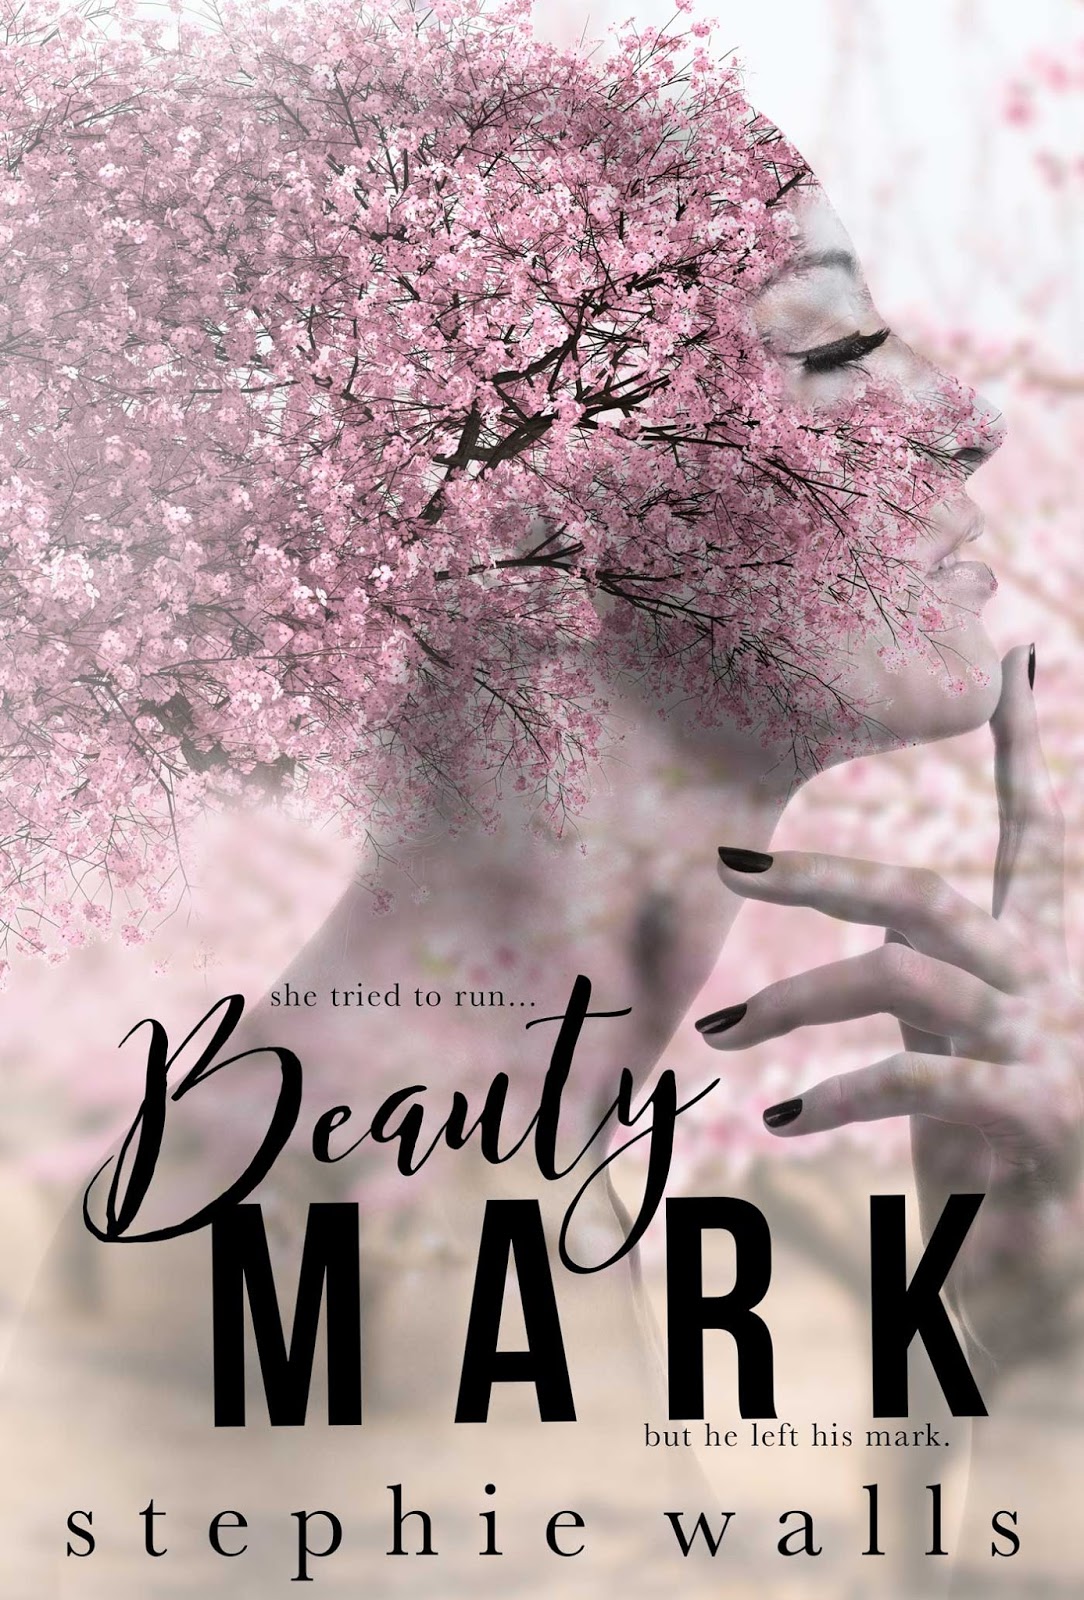 Beautiful mark. Beauty Mark. Beauty Mark фото. Beauty Mark Реутов. Beauty Mark instead.